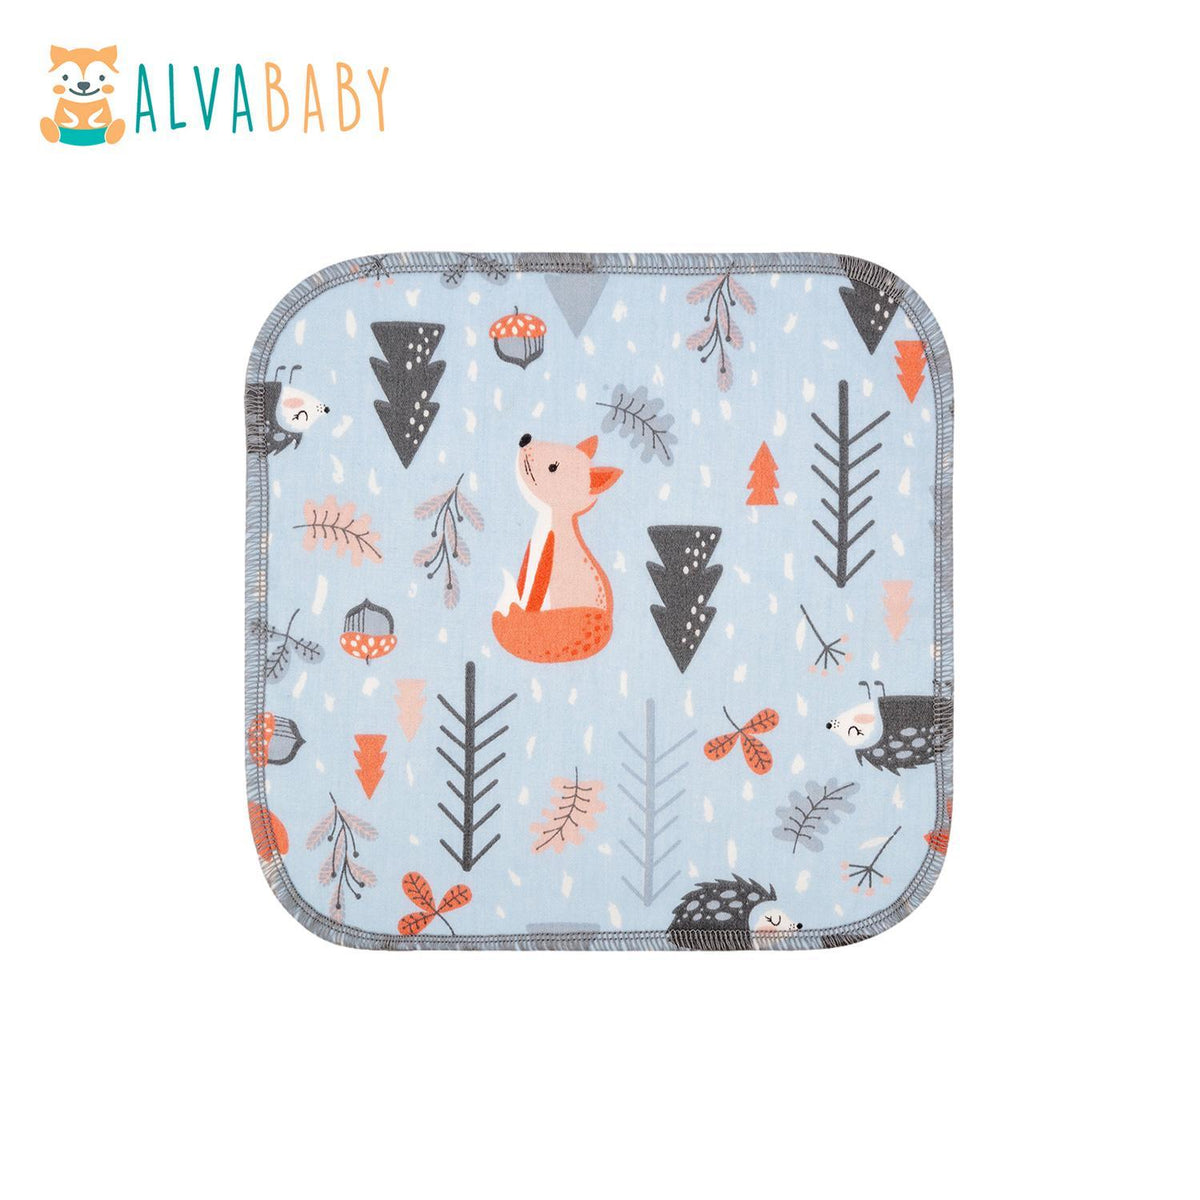 ALVA | Lingettes individuelles en coton et bambou - Alva Baby